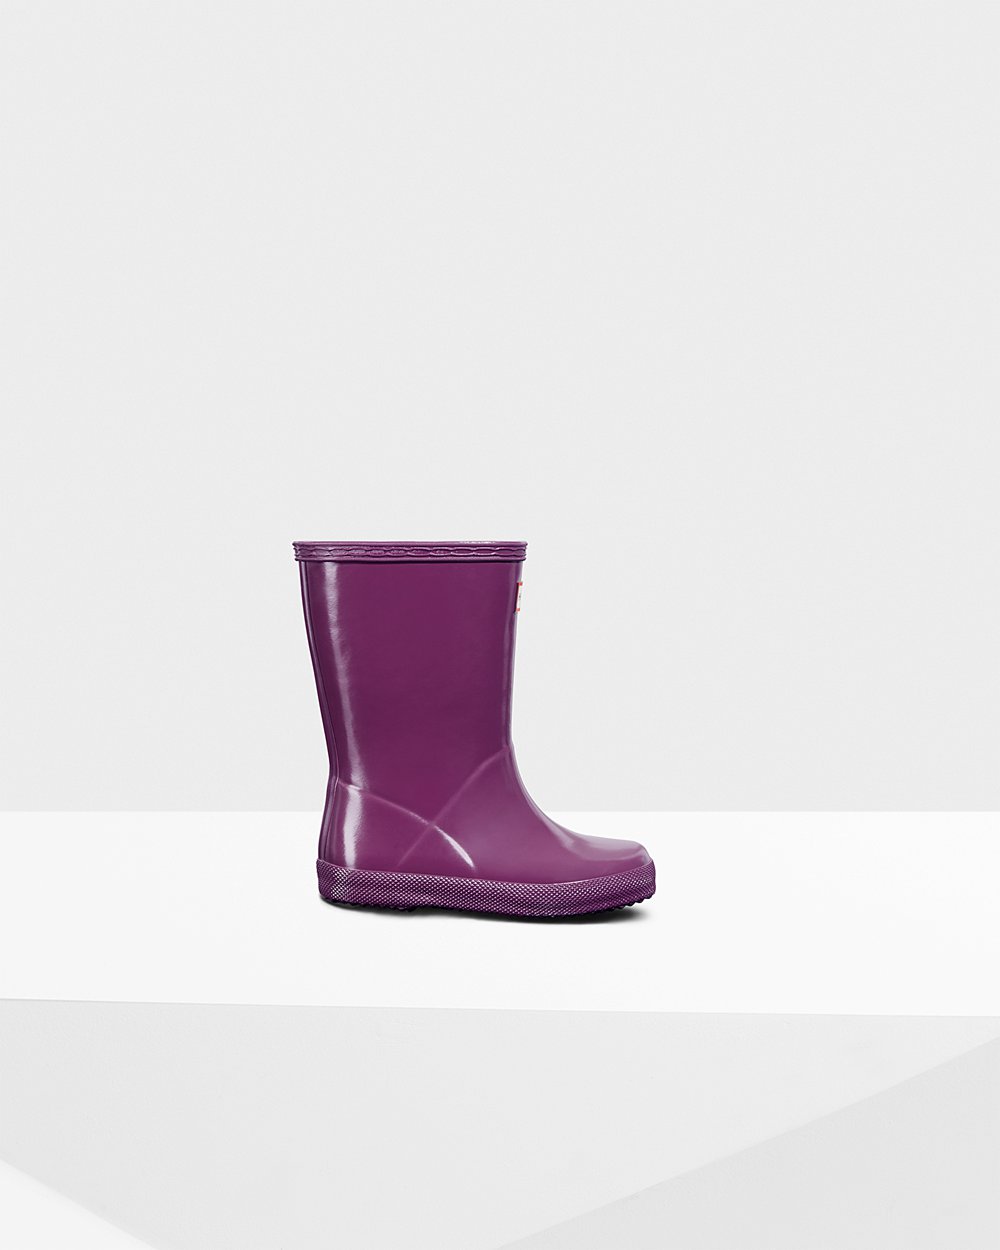 Kids Rain Boots - Hunter Original First Classic Gloss (04BPTMYIF) - Purple